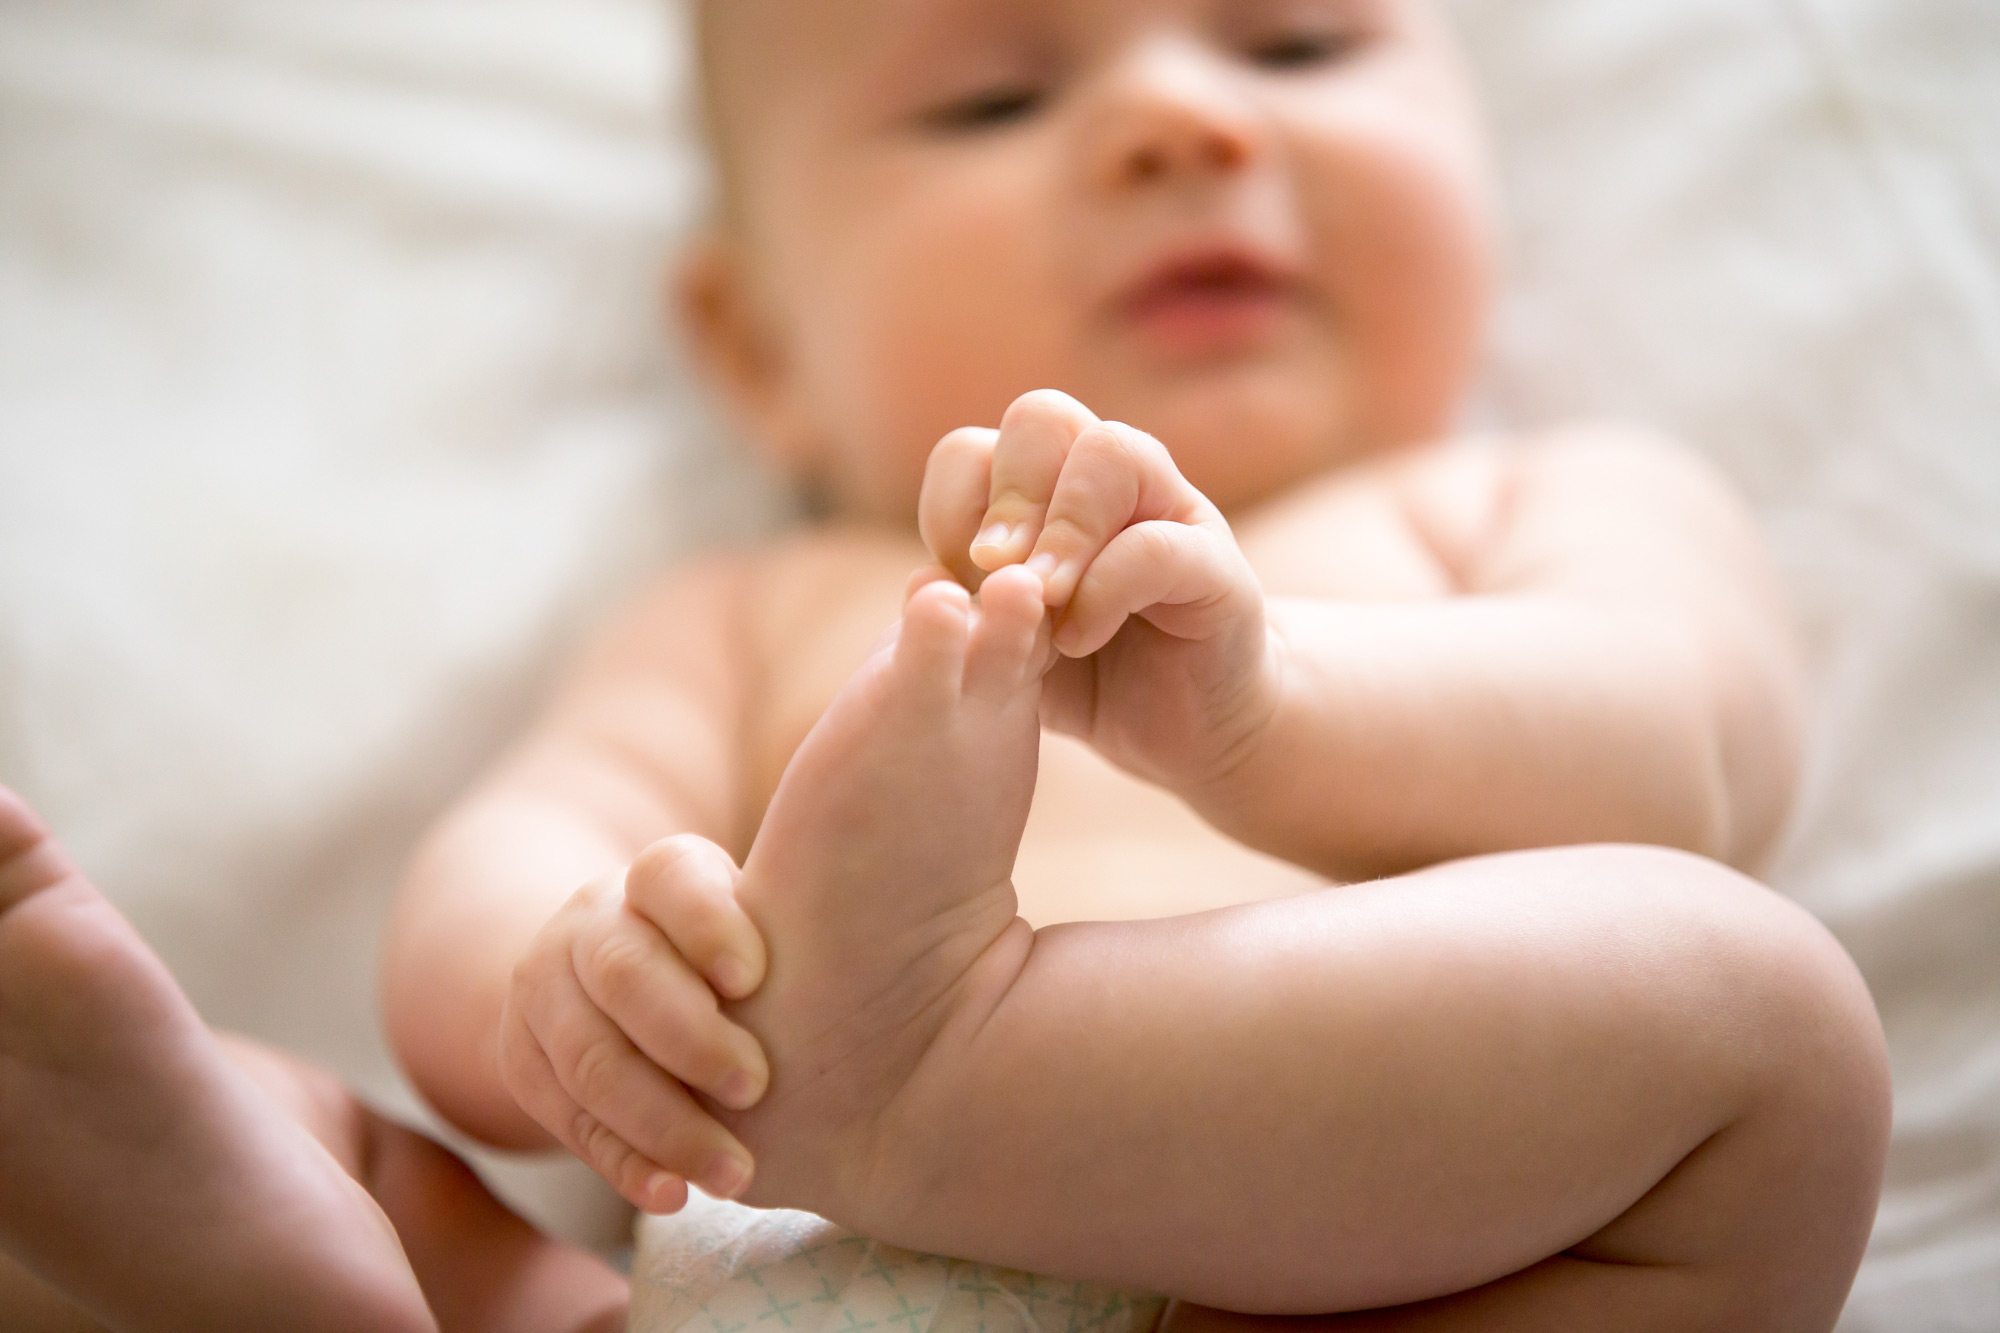 Développement de bébé à 3 mois : que fait un bébé de 3 mois ?